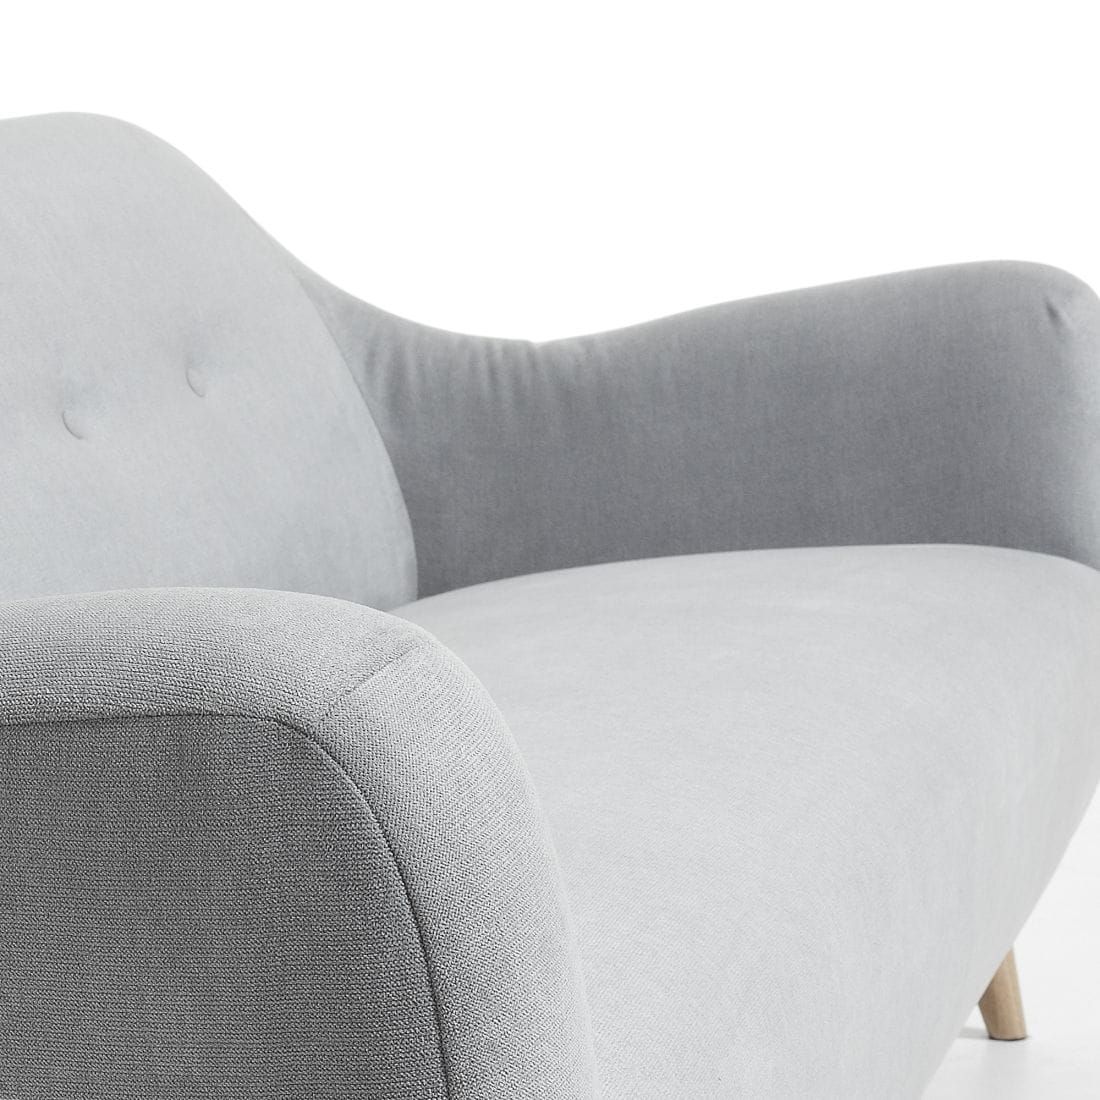 La Forma Orby 3-Sitzer Sofa